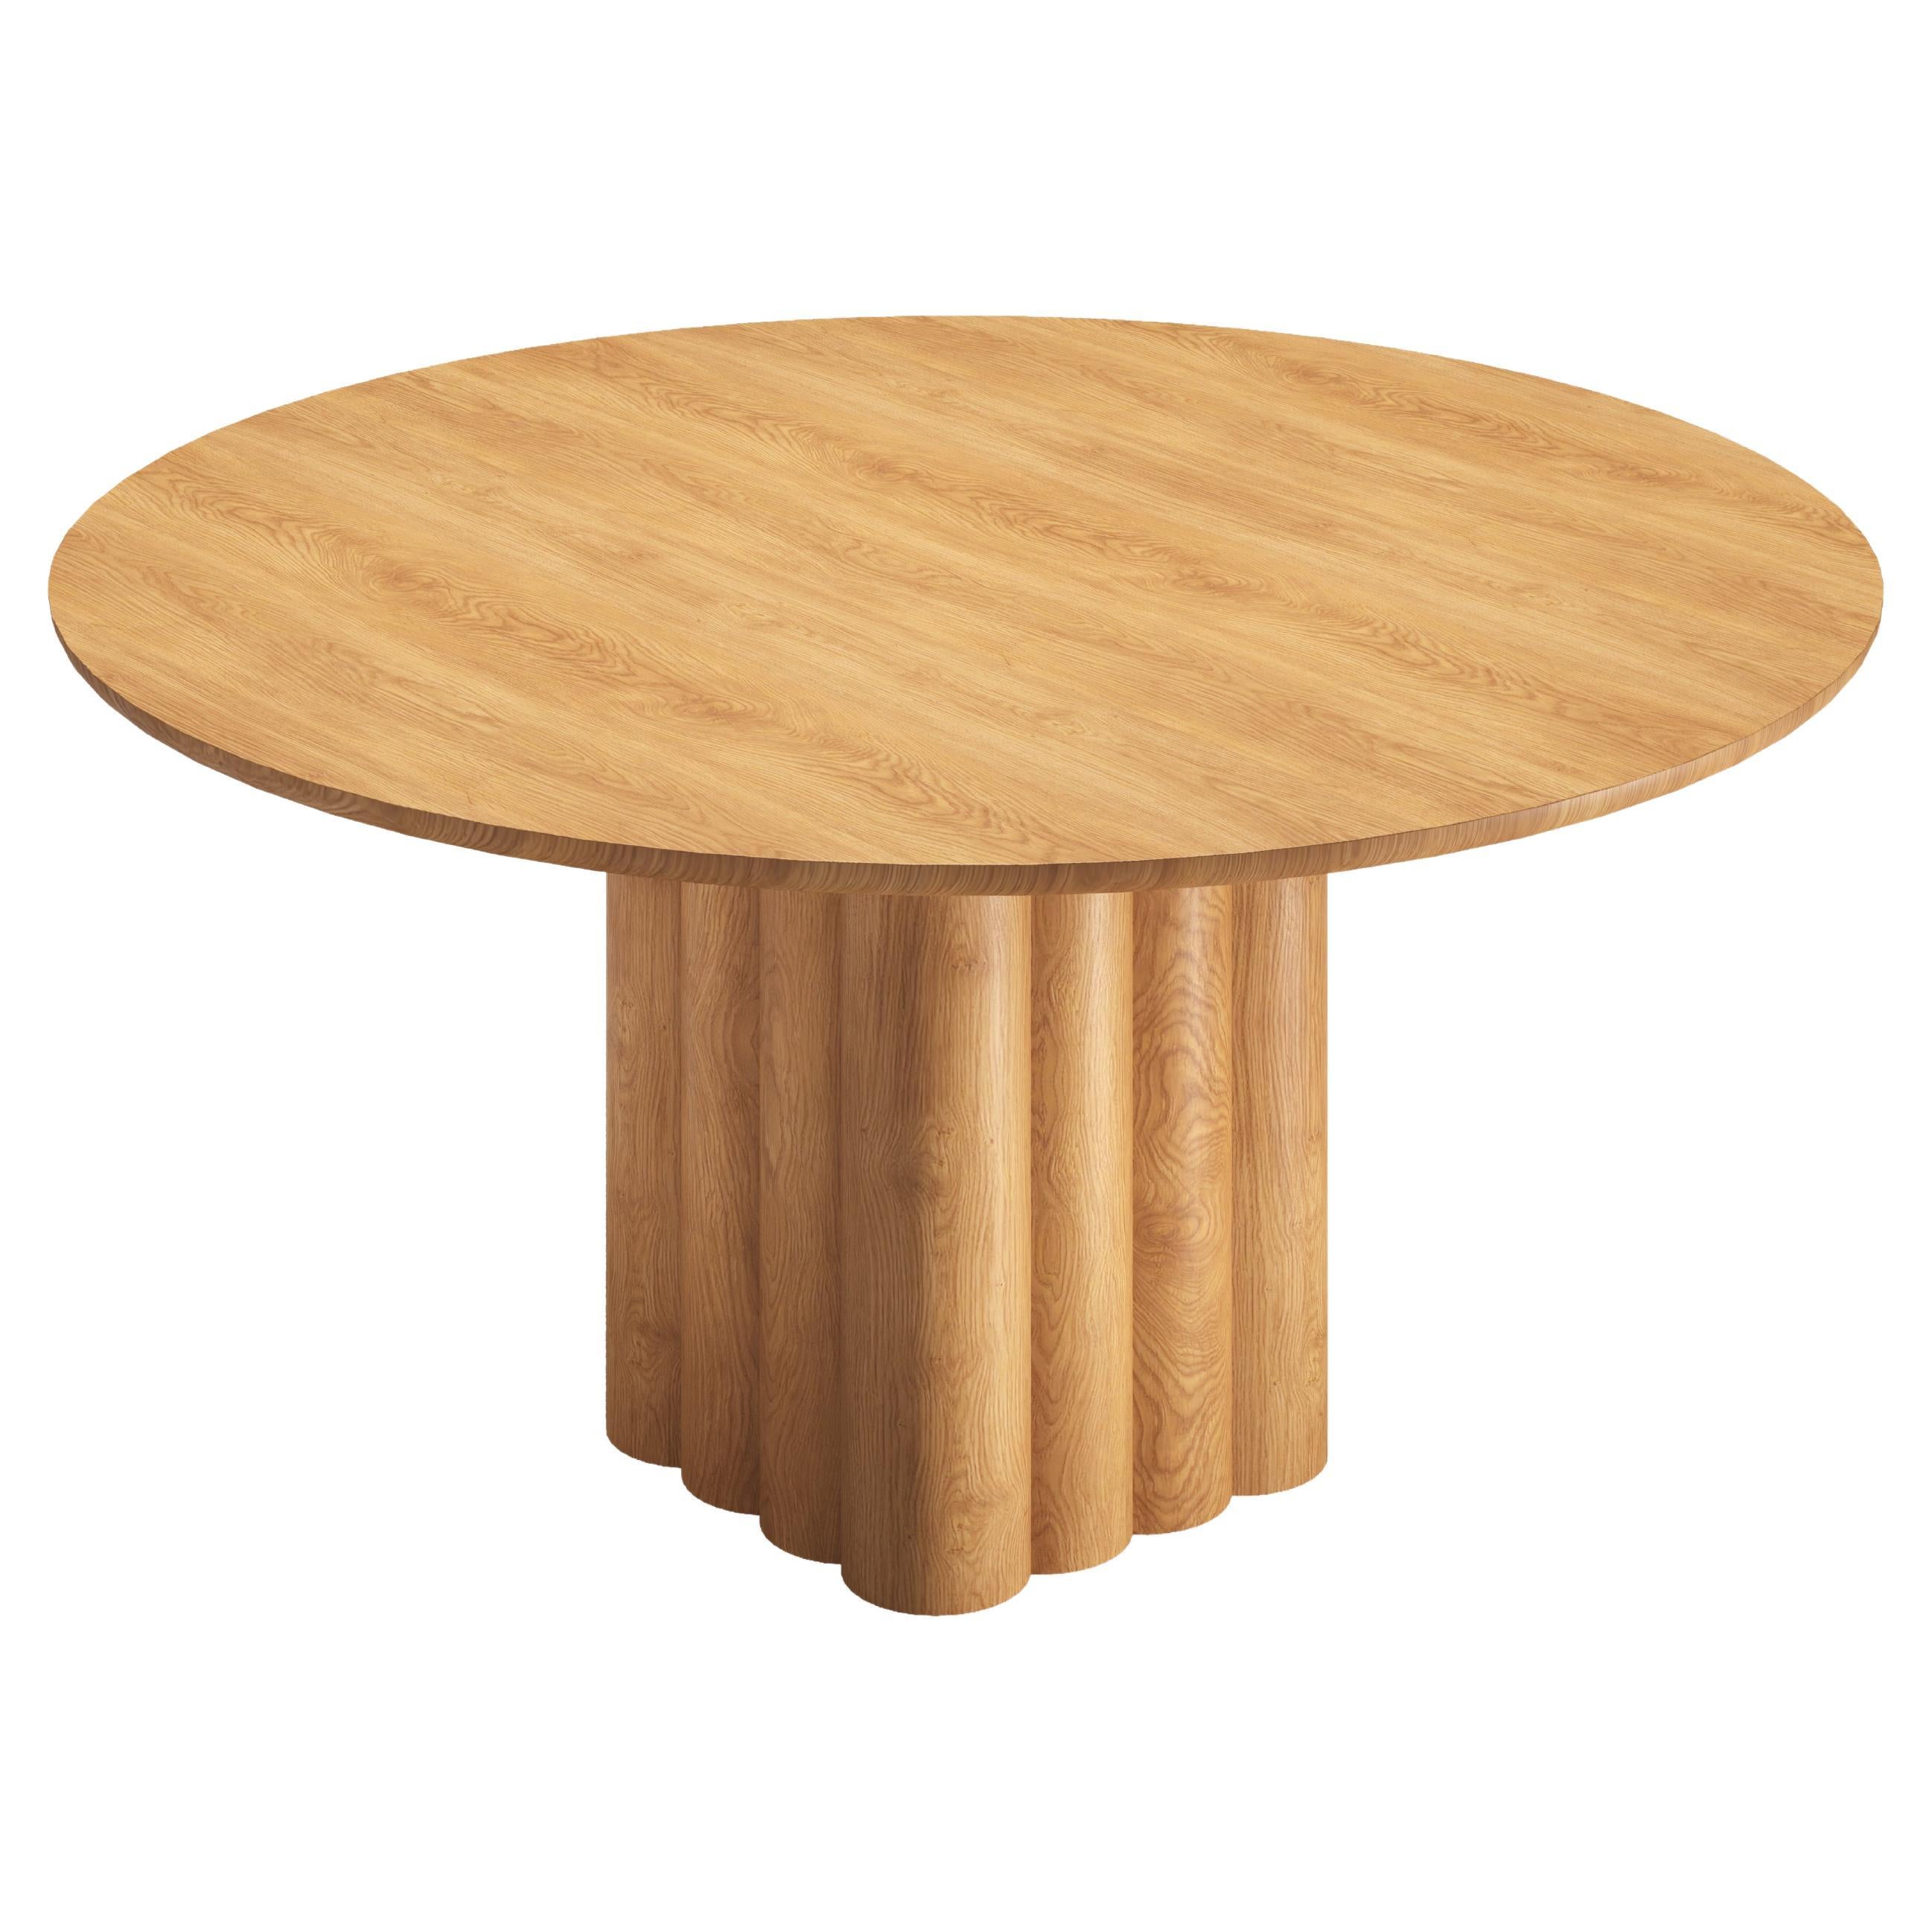 Table de salle à manger rondePlush par Dk3, en chêne naturel, 150 cm